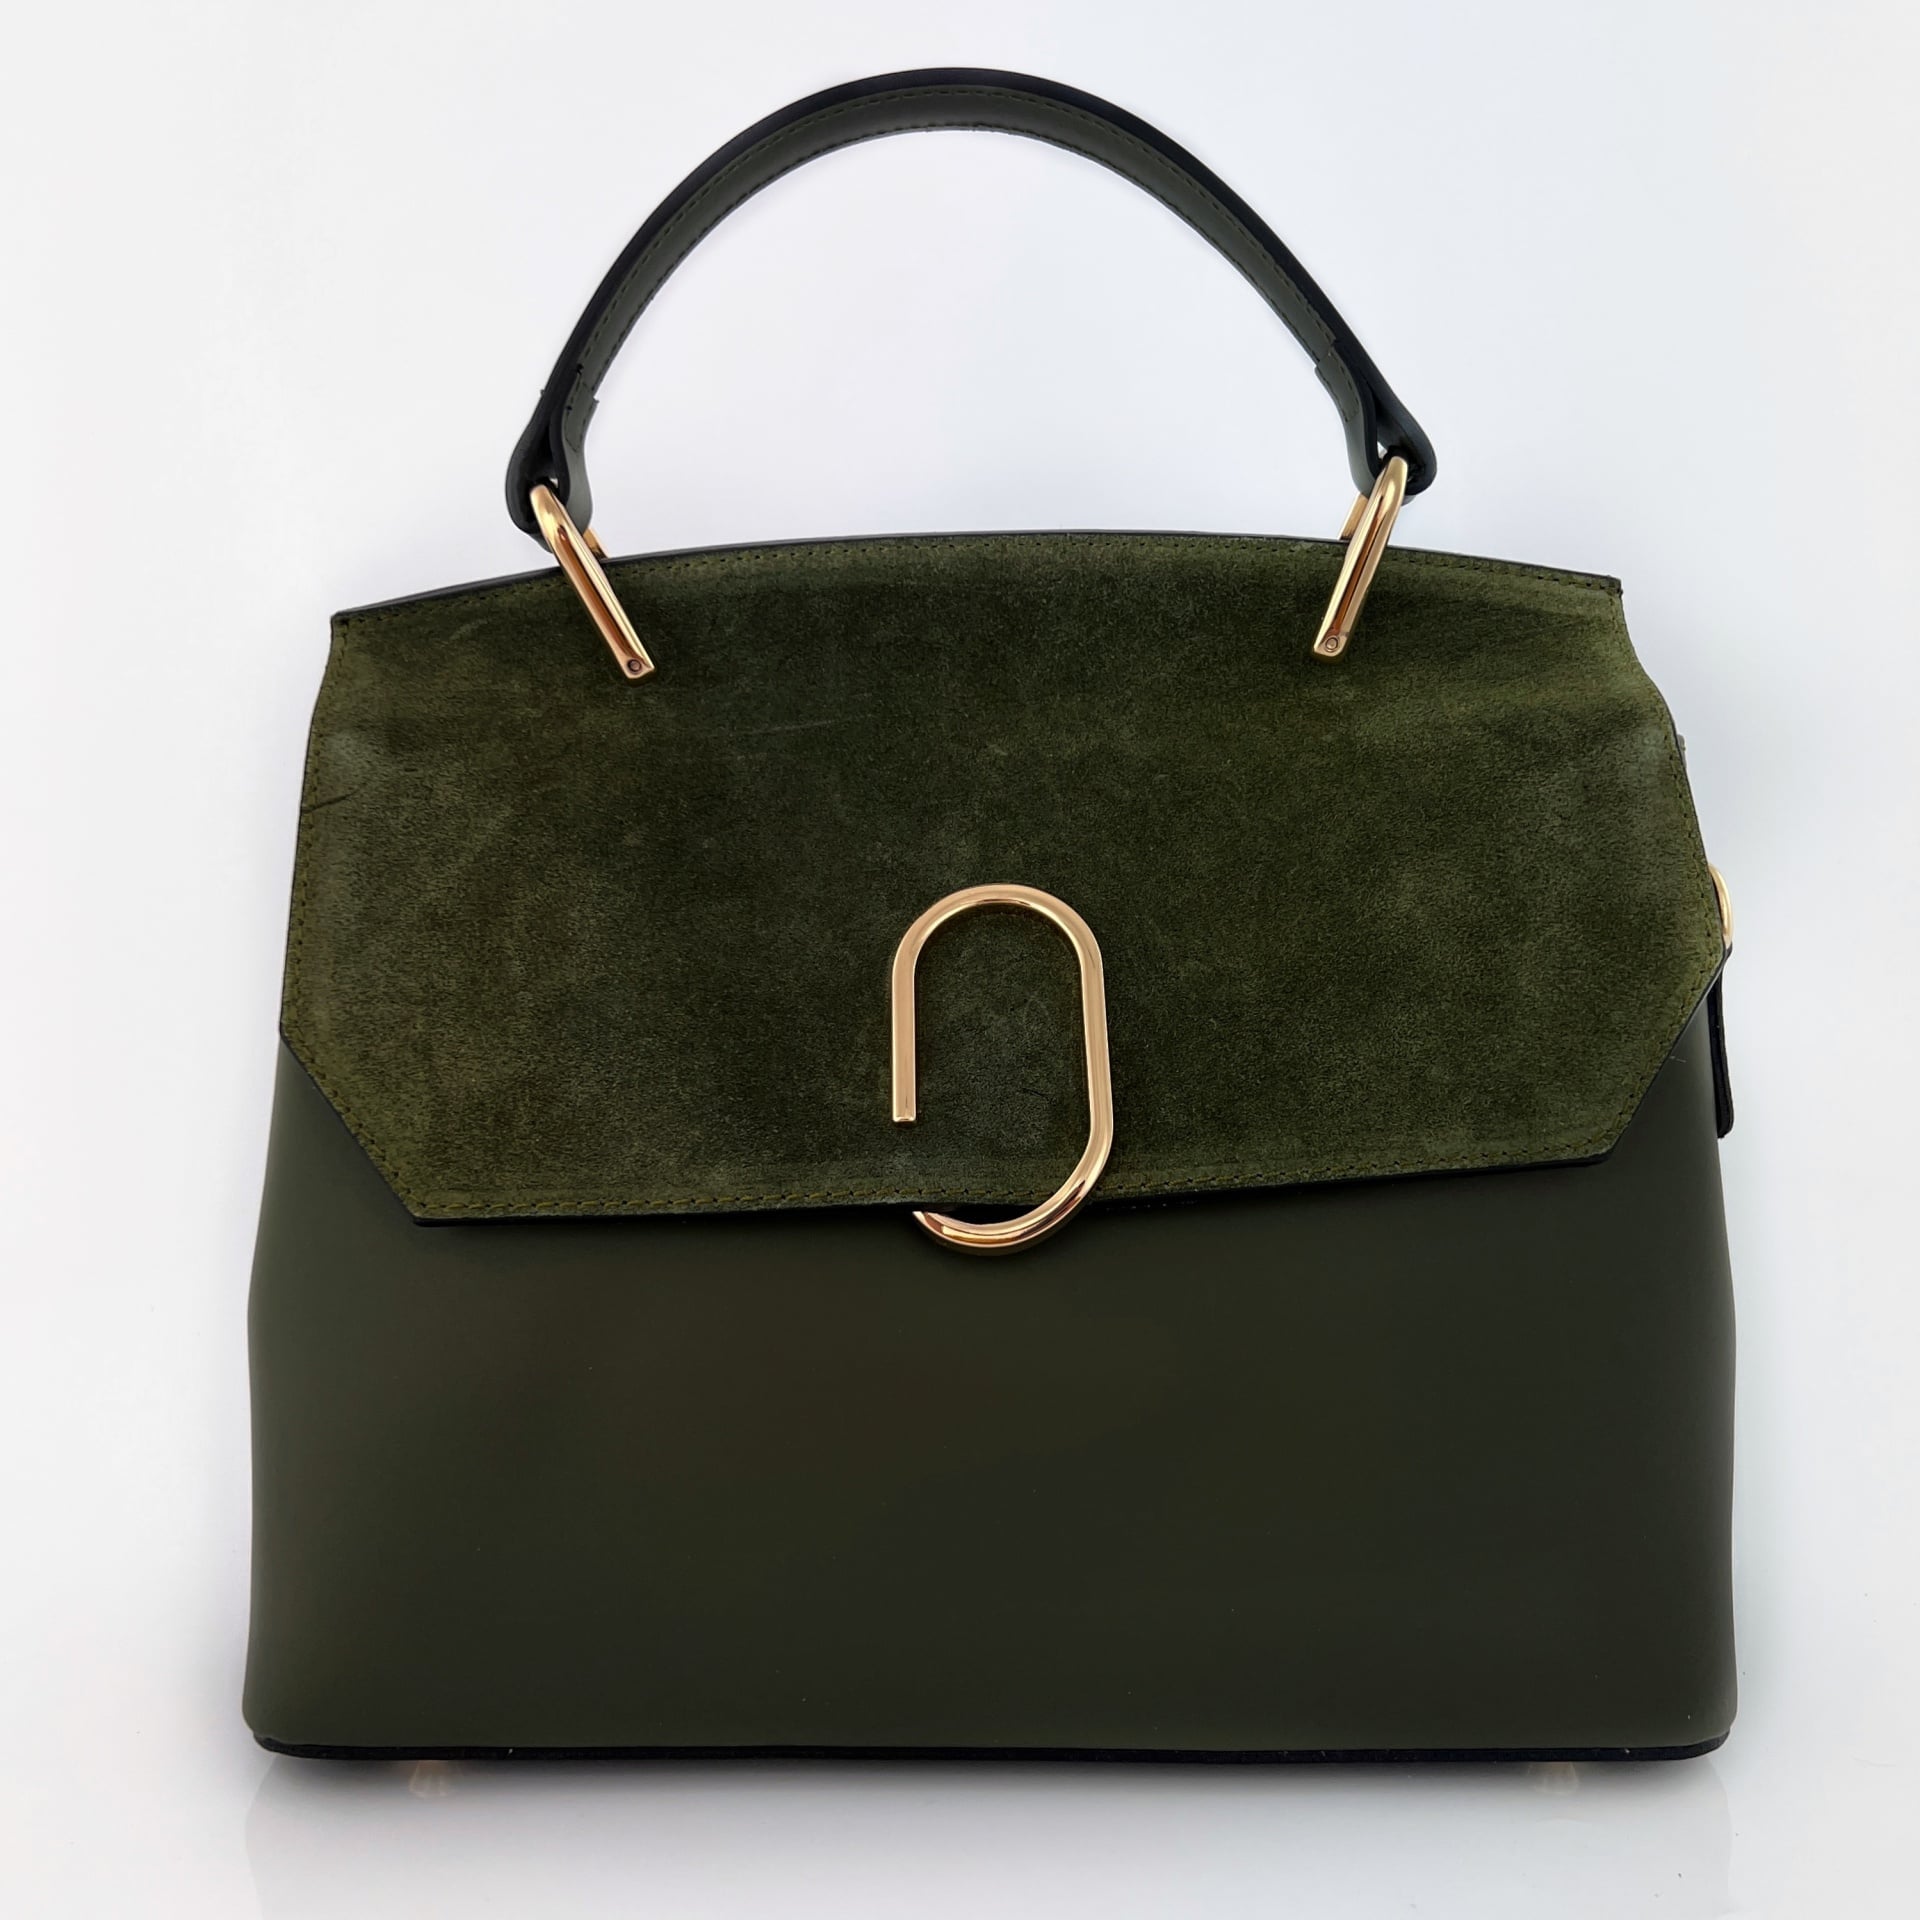 Луксозна дамска чанта от естествена кожа с елементи от естествен велур - тъмно зелена 